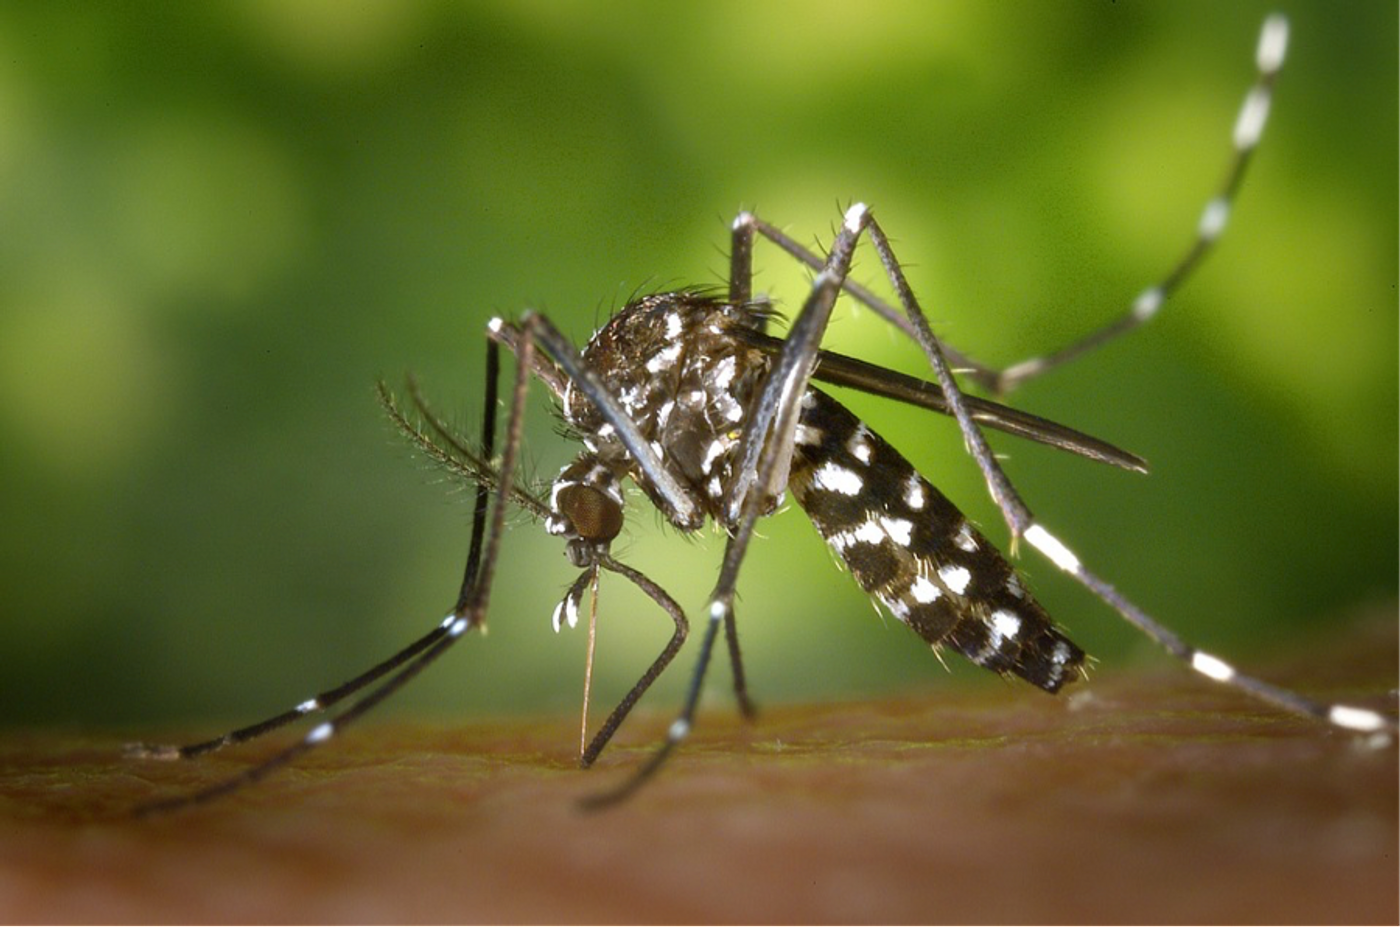 Malaria resistance 'unable to spread'